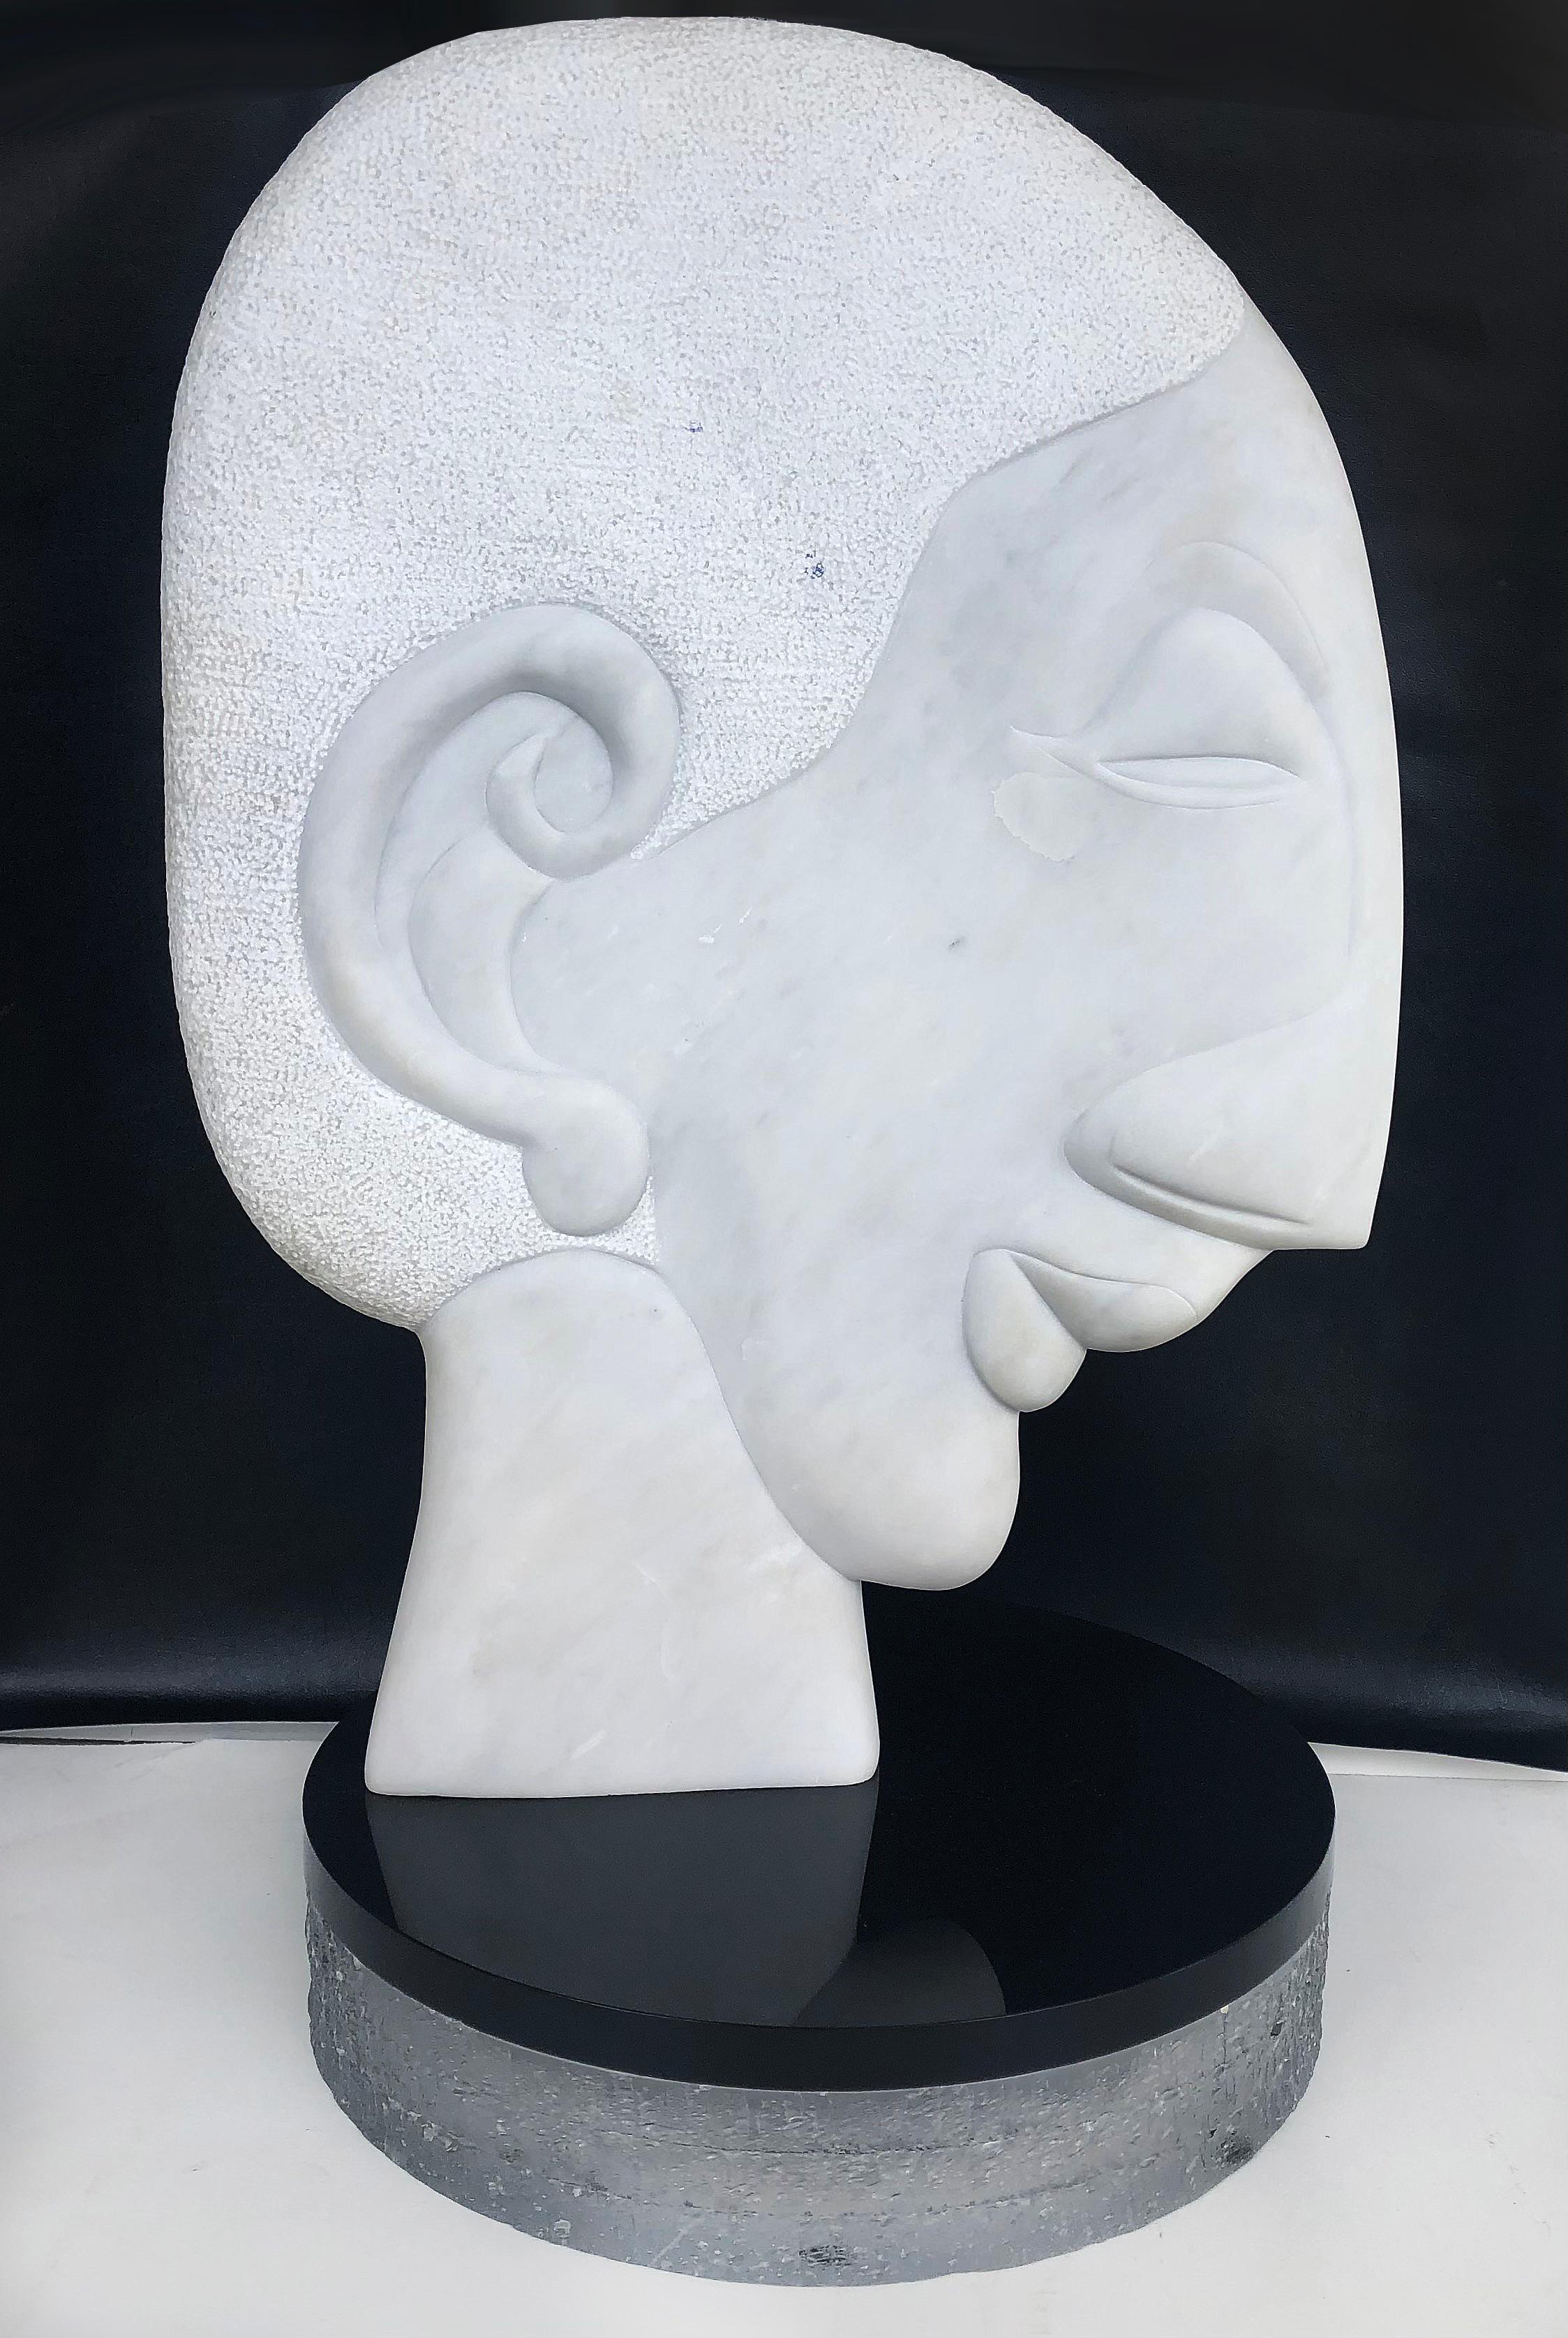 Sculpture vintage abstraite en marbre sculpté William P. Katz signée WPK 

Est proposée à la vente une sculpture abstraite originale en marbre taillé, supposée être un Self-Portrait de l'artiste américain William P. Katz (1936-2003). La sculpture